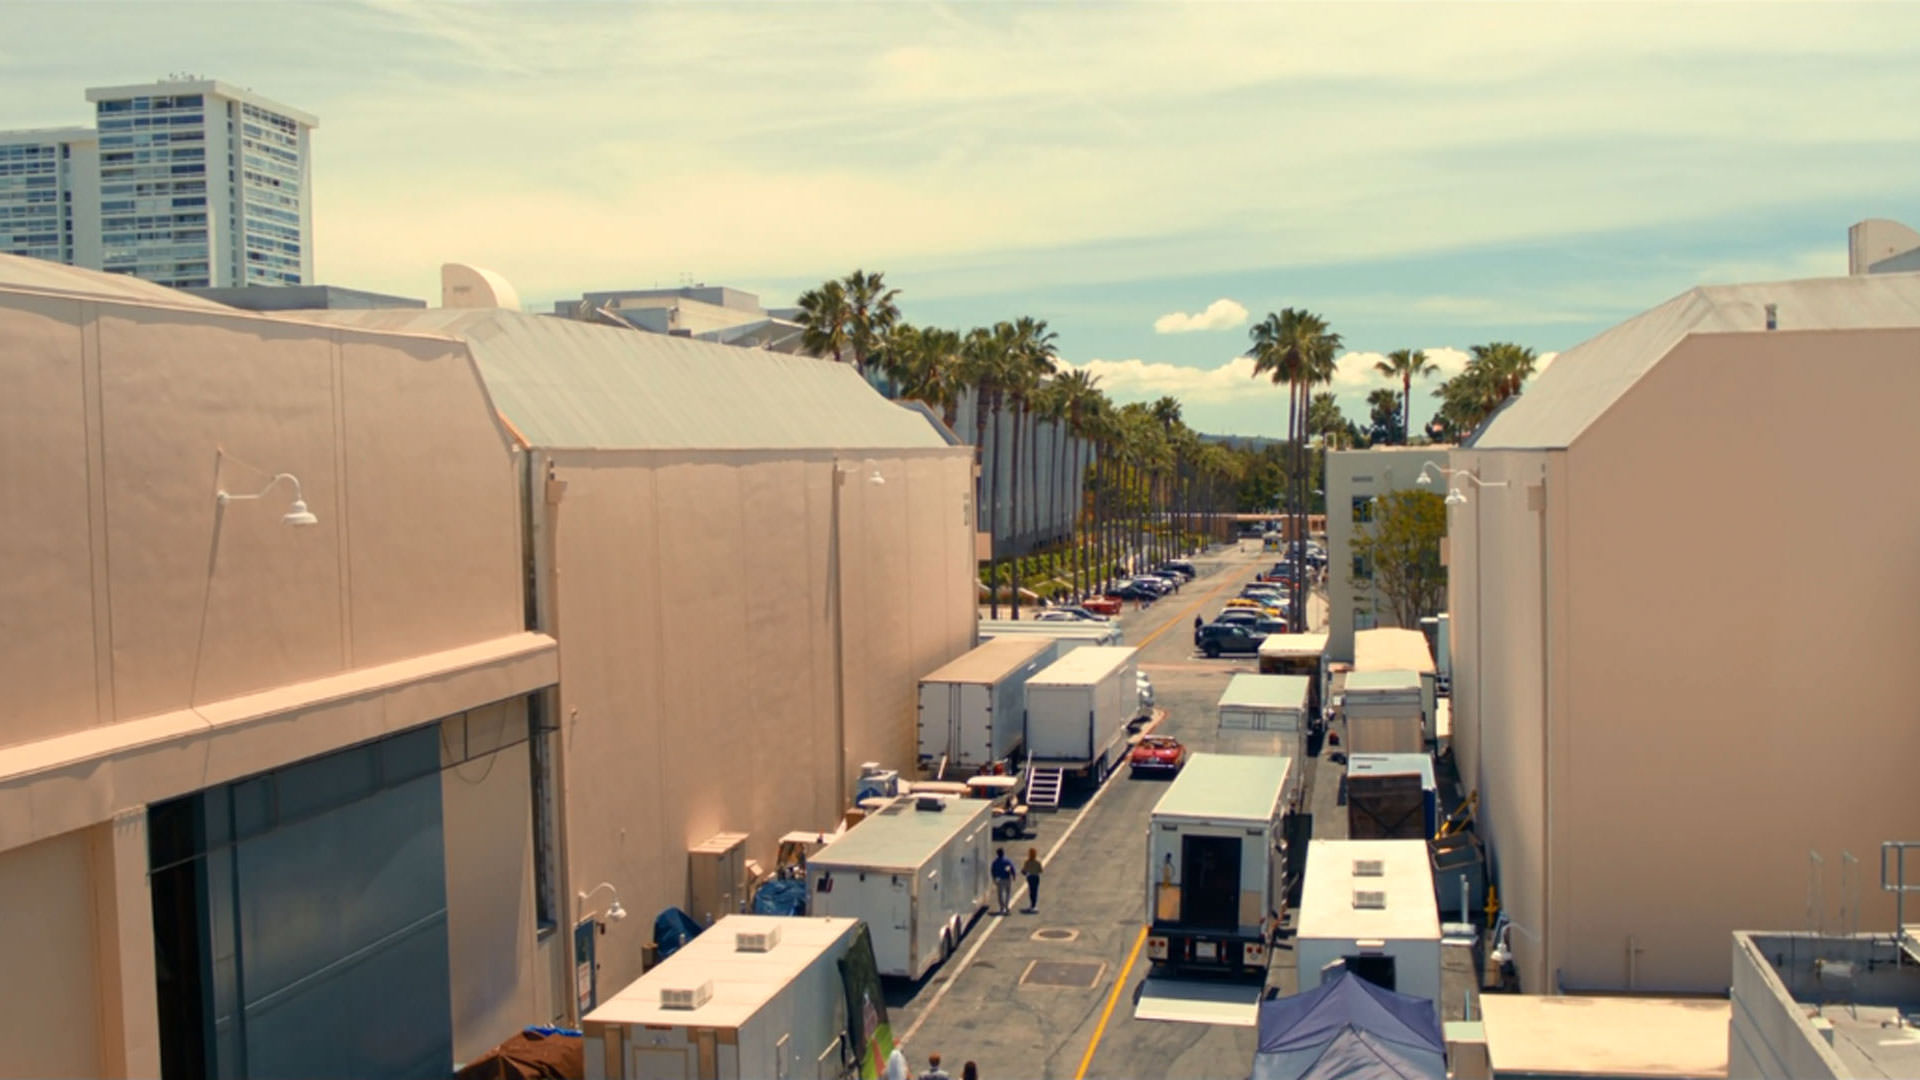 نمای باز از یک استودیوی هالیوود در داستان آمریکایی به کارگردانی کورد جفرسون